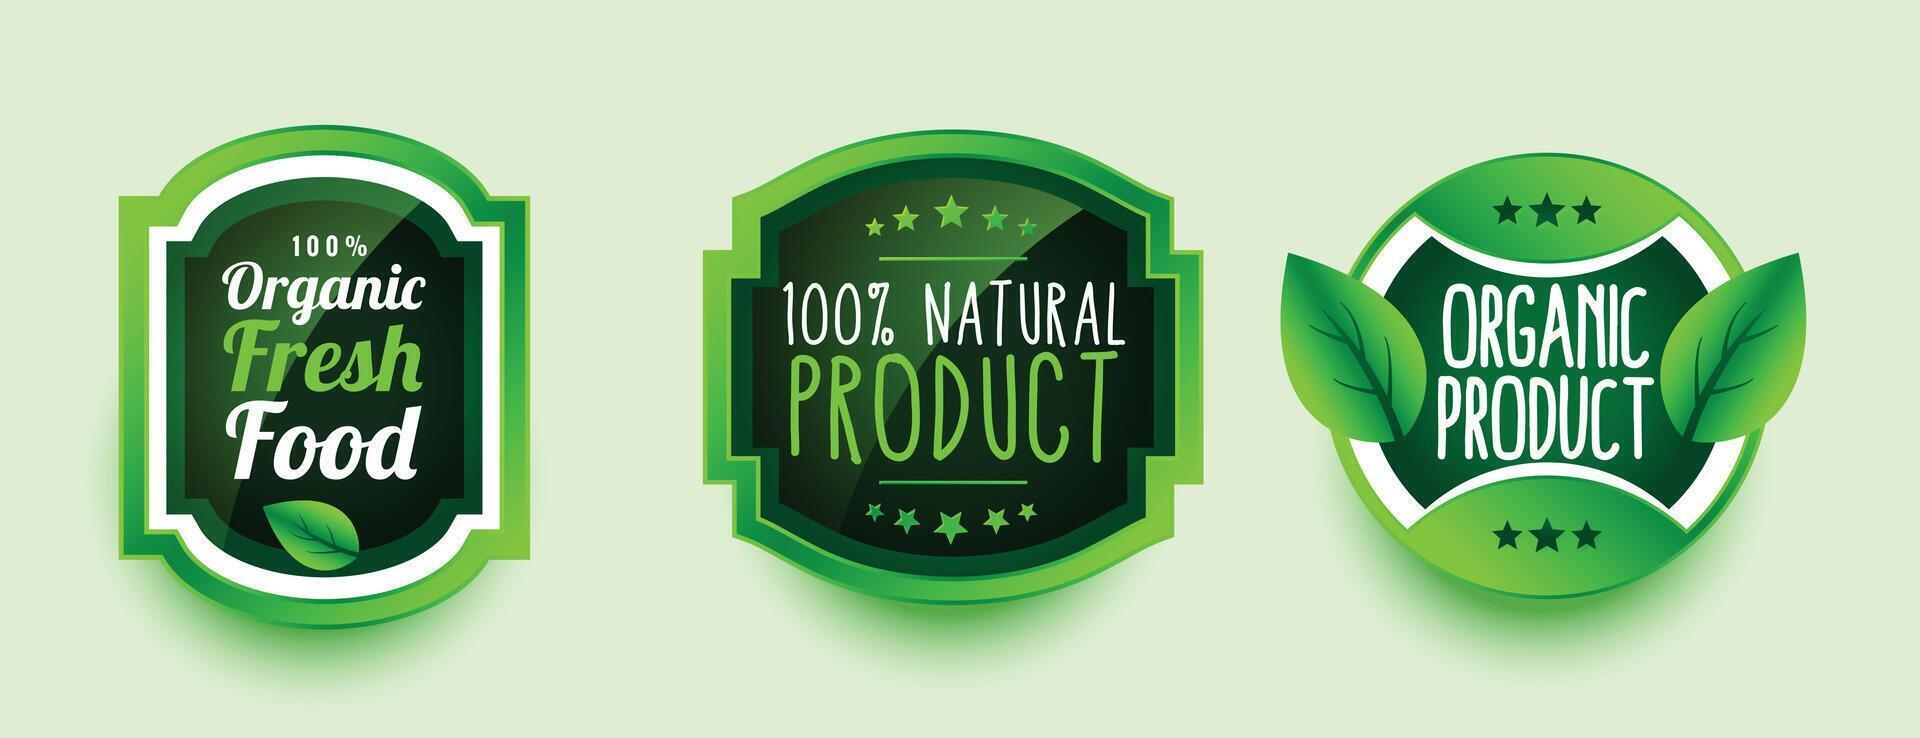 impostato di naturale e salutare azienda agricola fresco verde cibo etichetta o simbolo design vettore